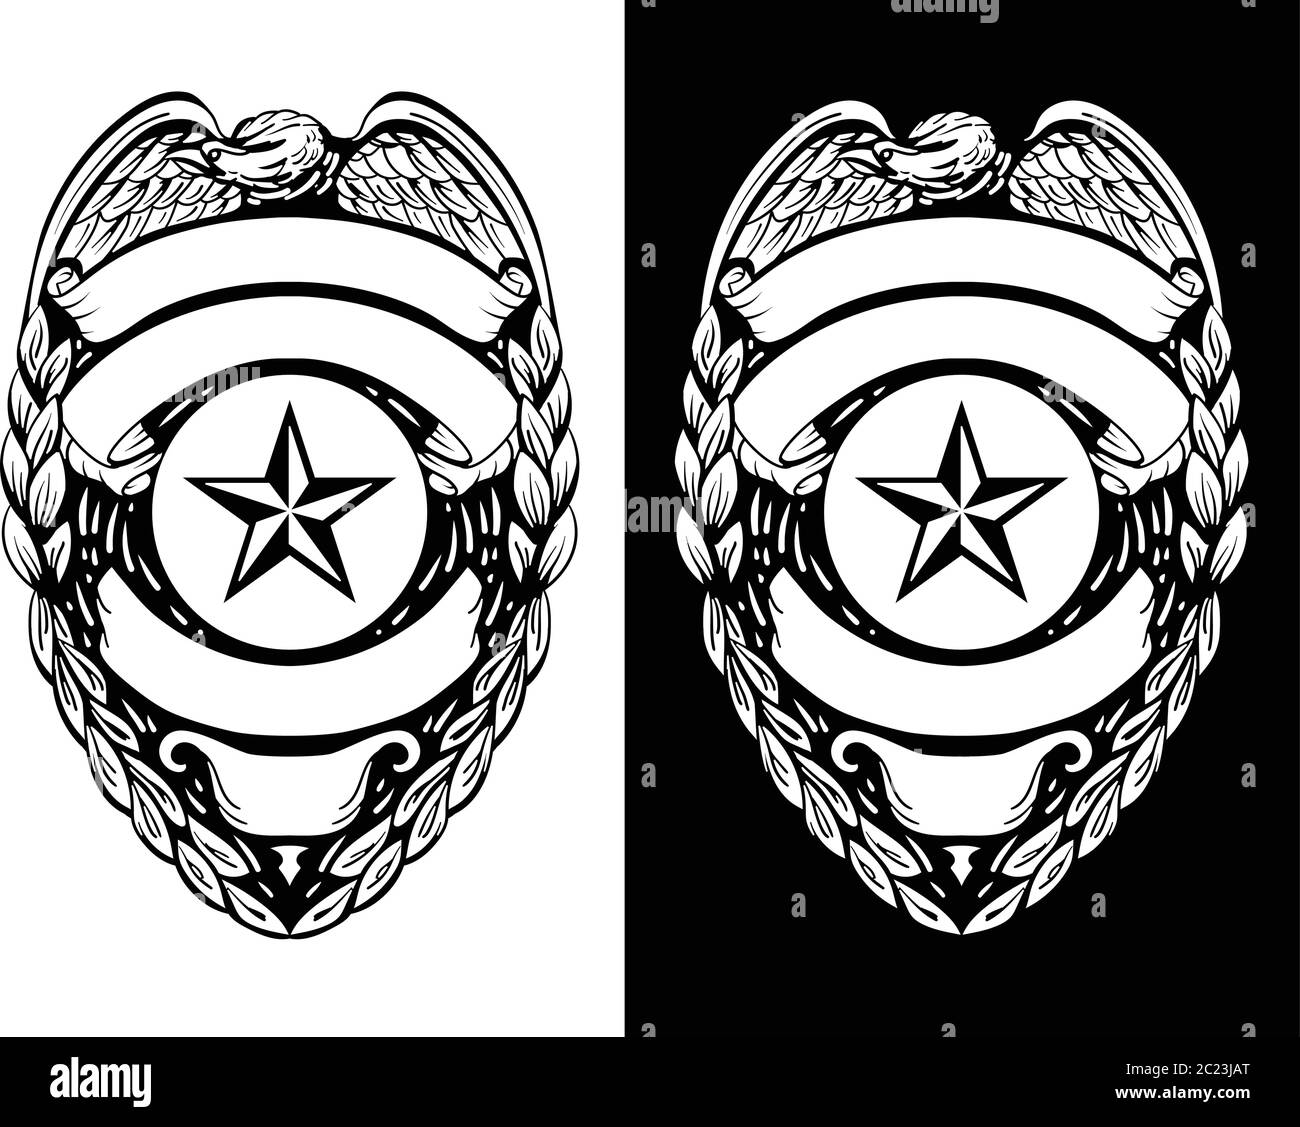 Polizia, sceriffo, badge forze dell'ordine ha isolato l'illustrazione vettoriale in entrambe le versioni Black Line Art e White Illustrazione Vettoriale